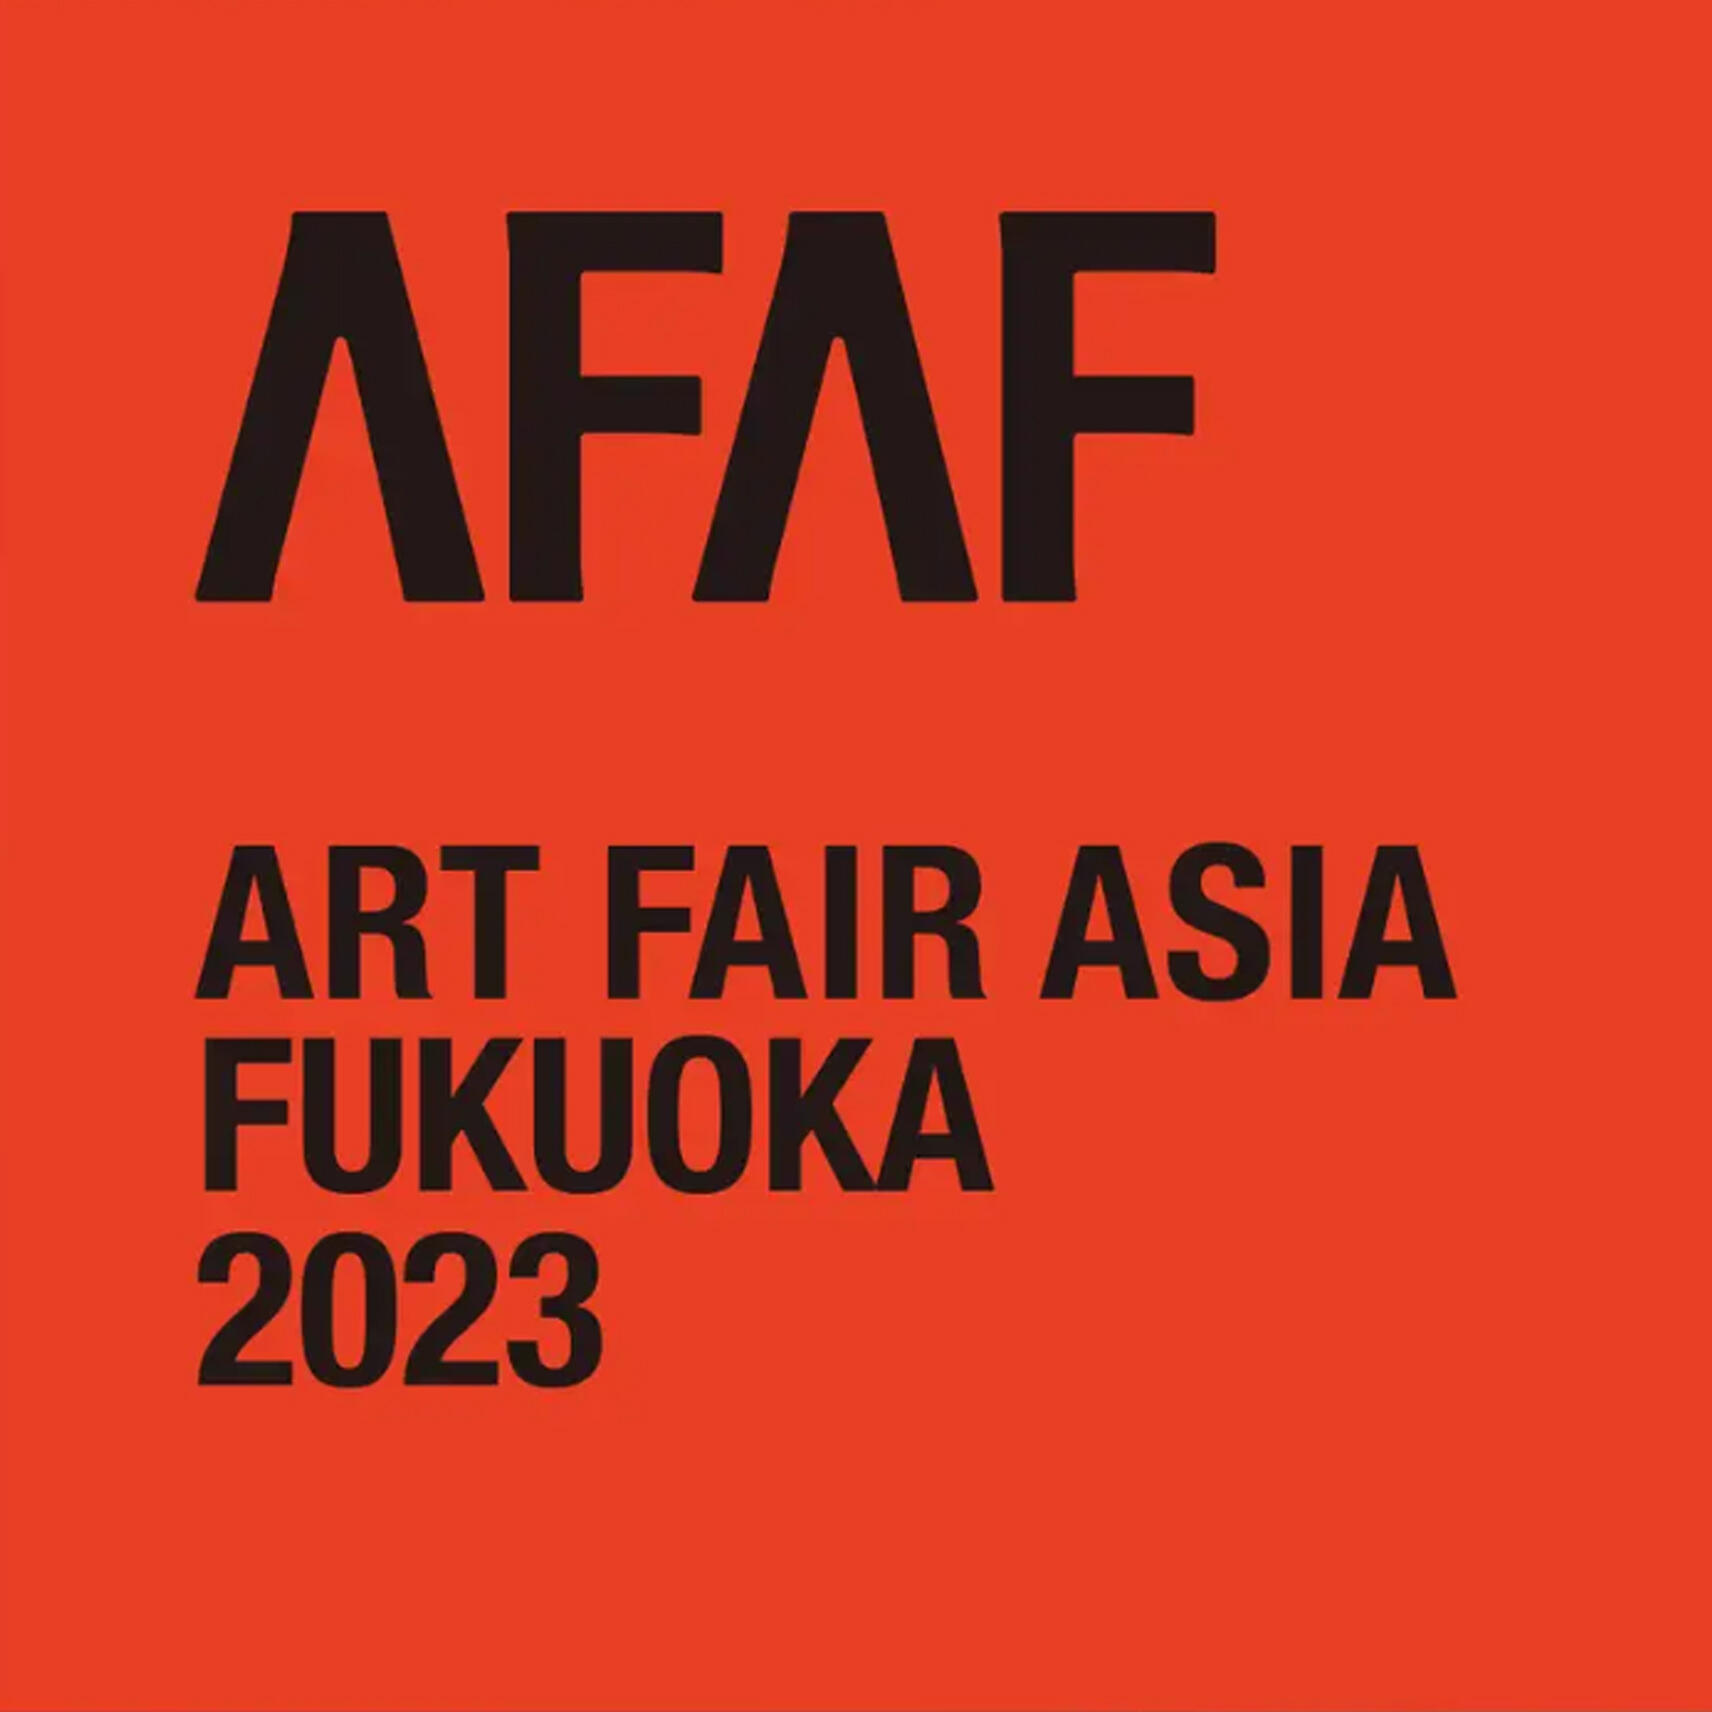 【アートフェア】Art Fair Asia Fukuoka 2023